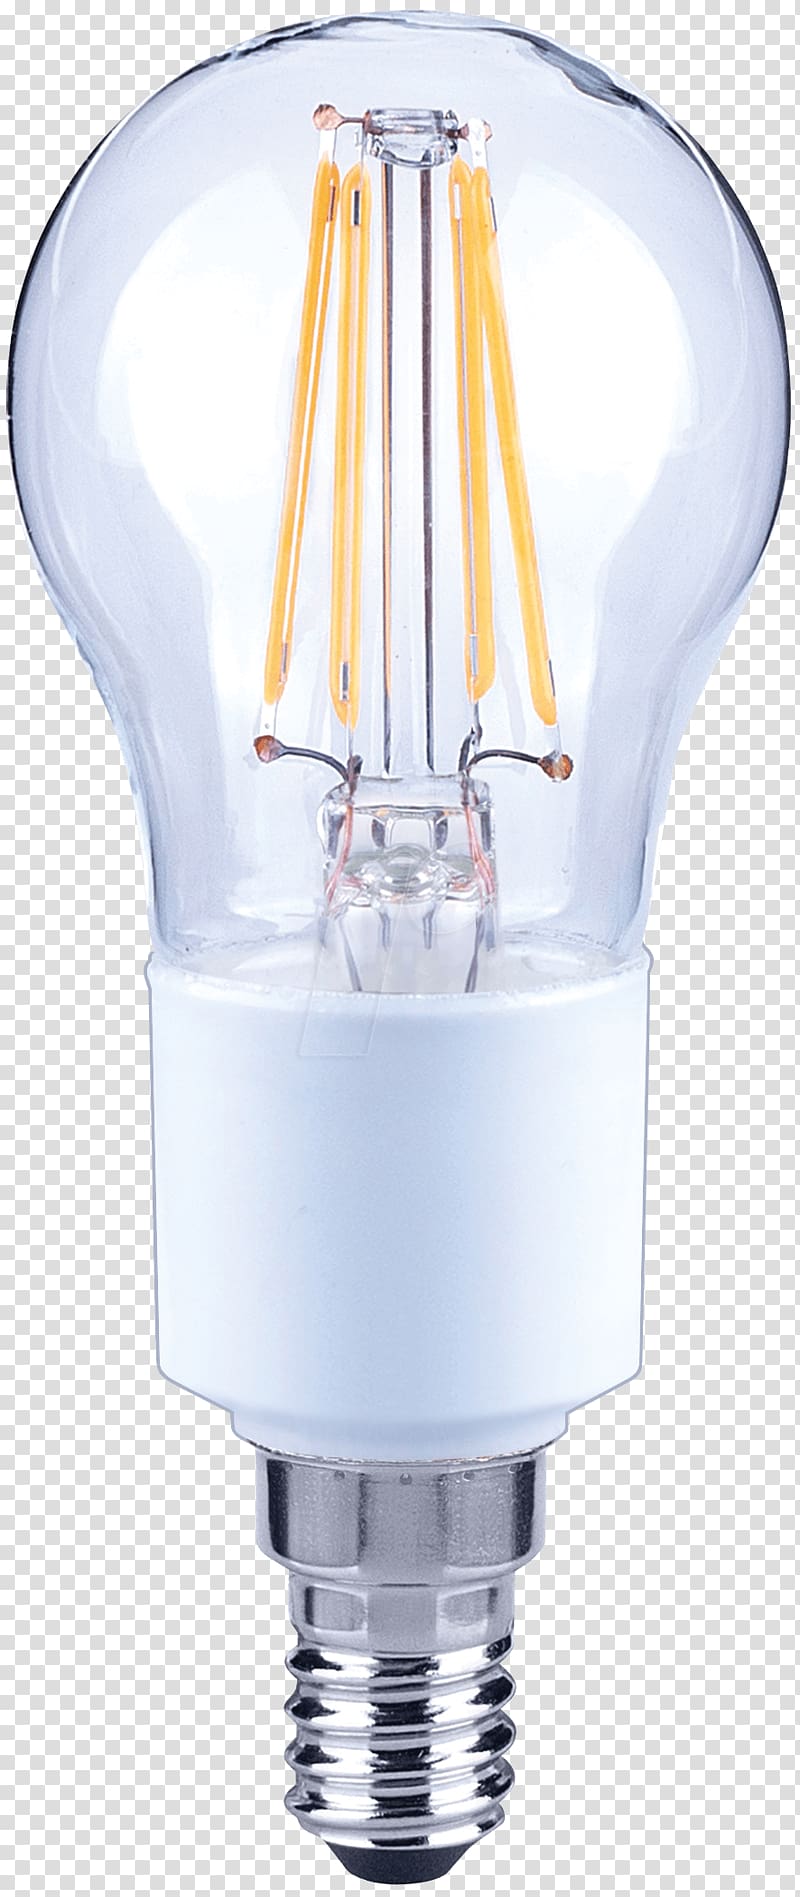 Incandescent light bulb LED lamp LED filament, violet filament transparent background PNG clipart